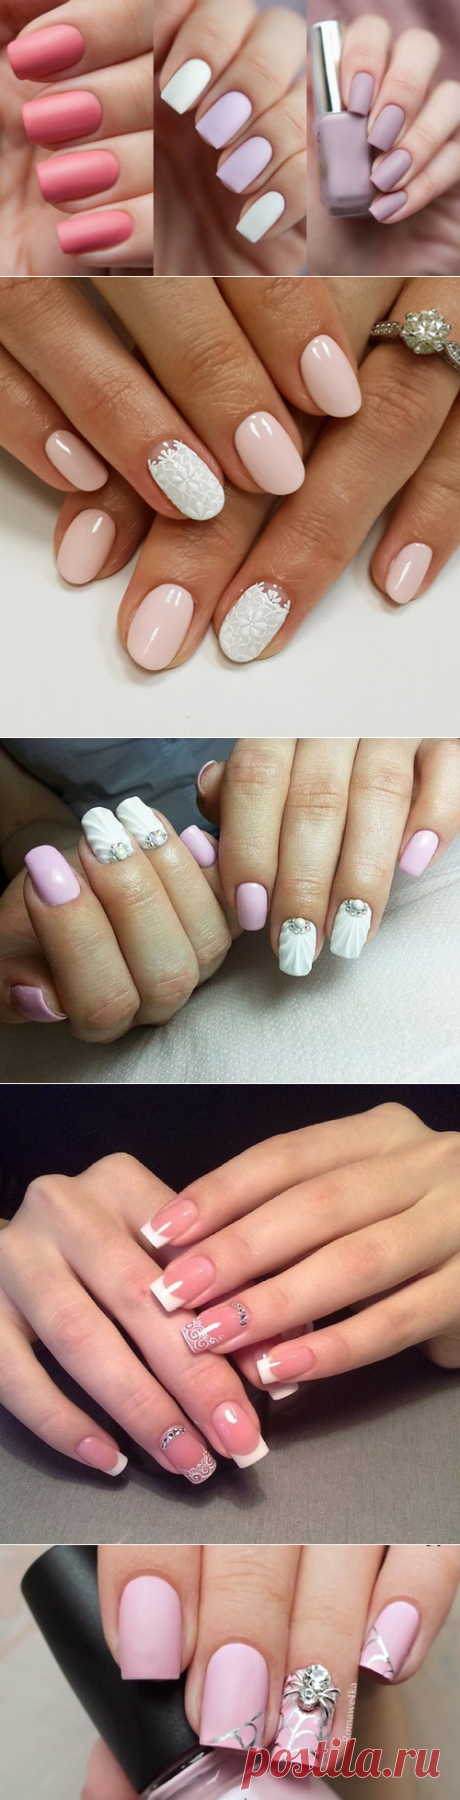 Модный весенний дизайн ногтей 2017-2018 - фото идеи весенний маникюр на короткие ногти | topxstyle.ru